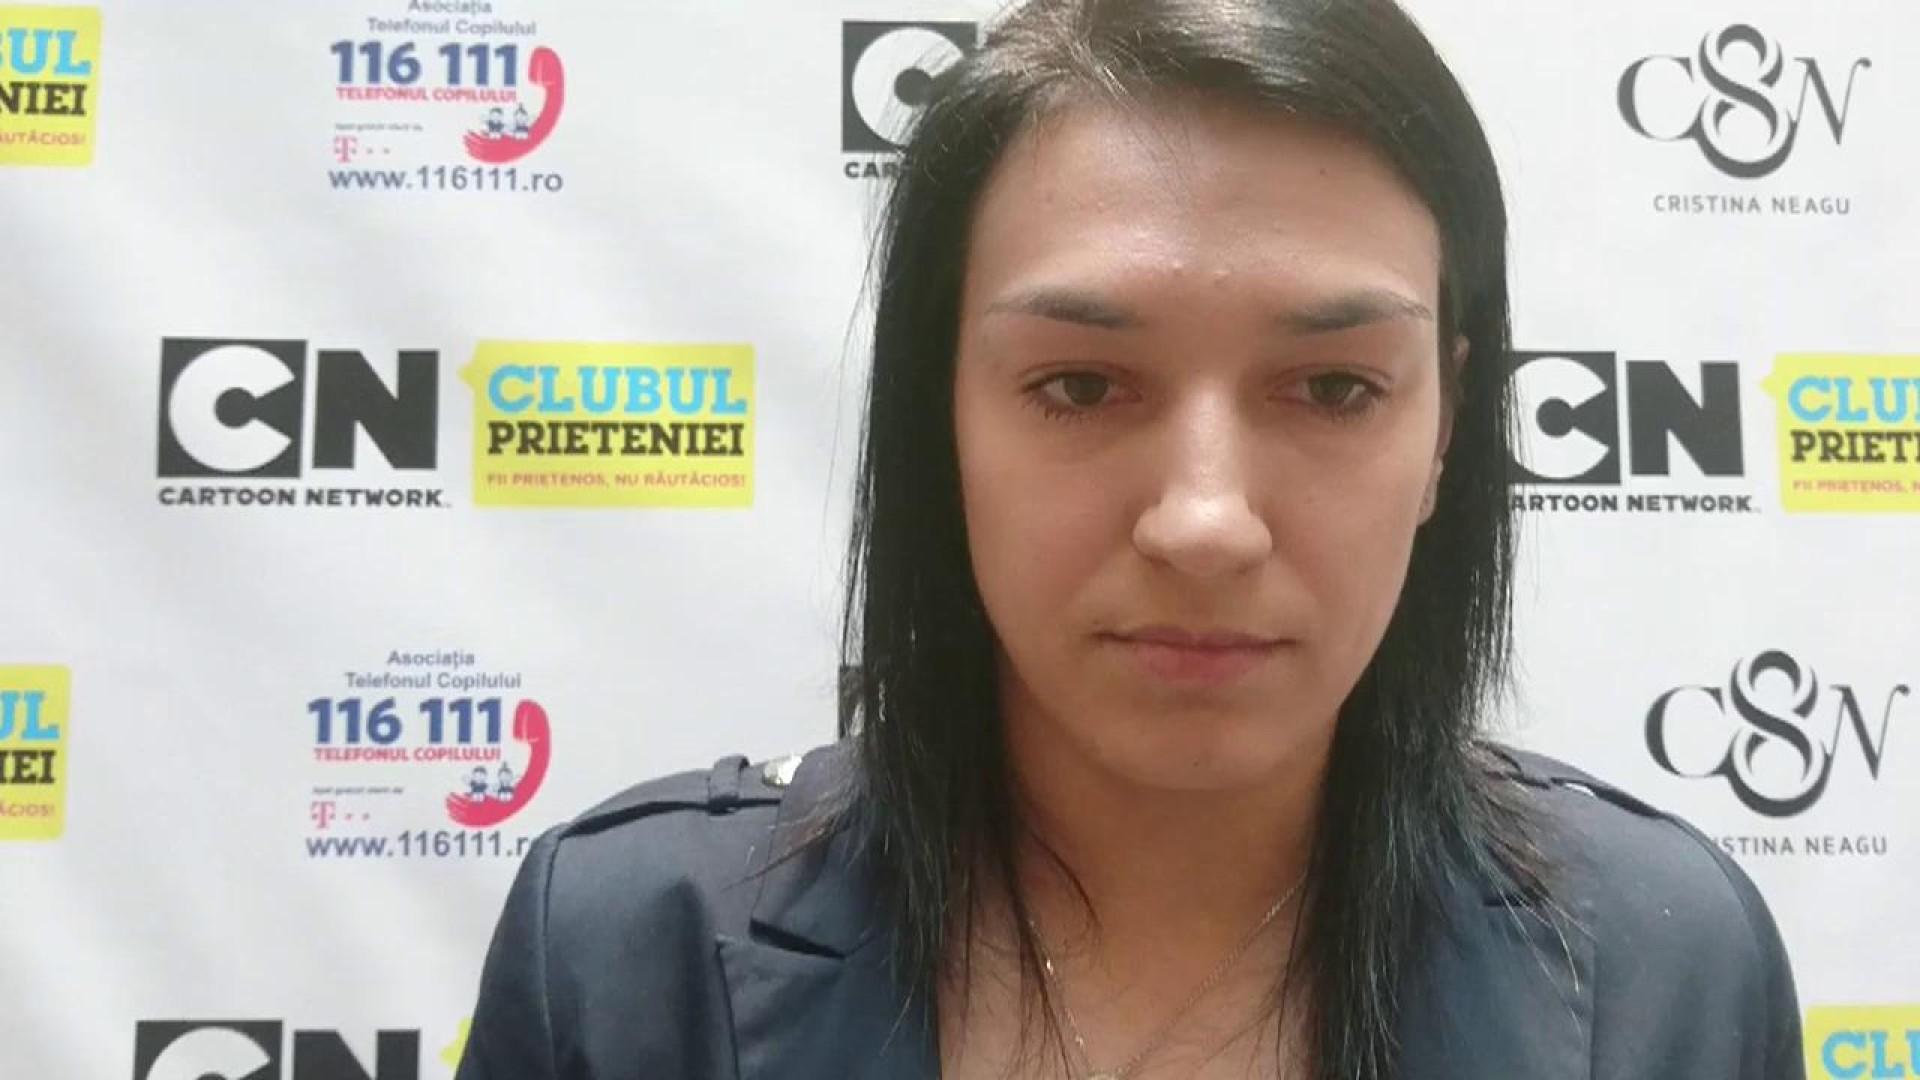 Handbalista Cristina Neagu, mărturisiri despre scenele de violență: ”Nu am intervenit, pentru că riscam să devin și eu agresată”